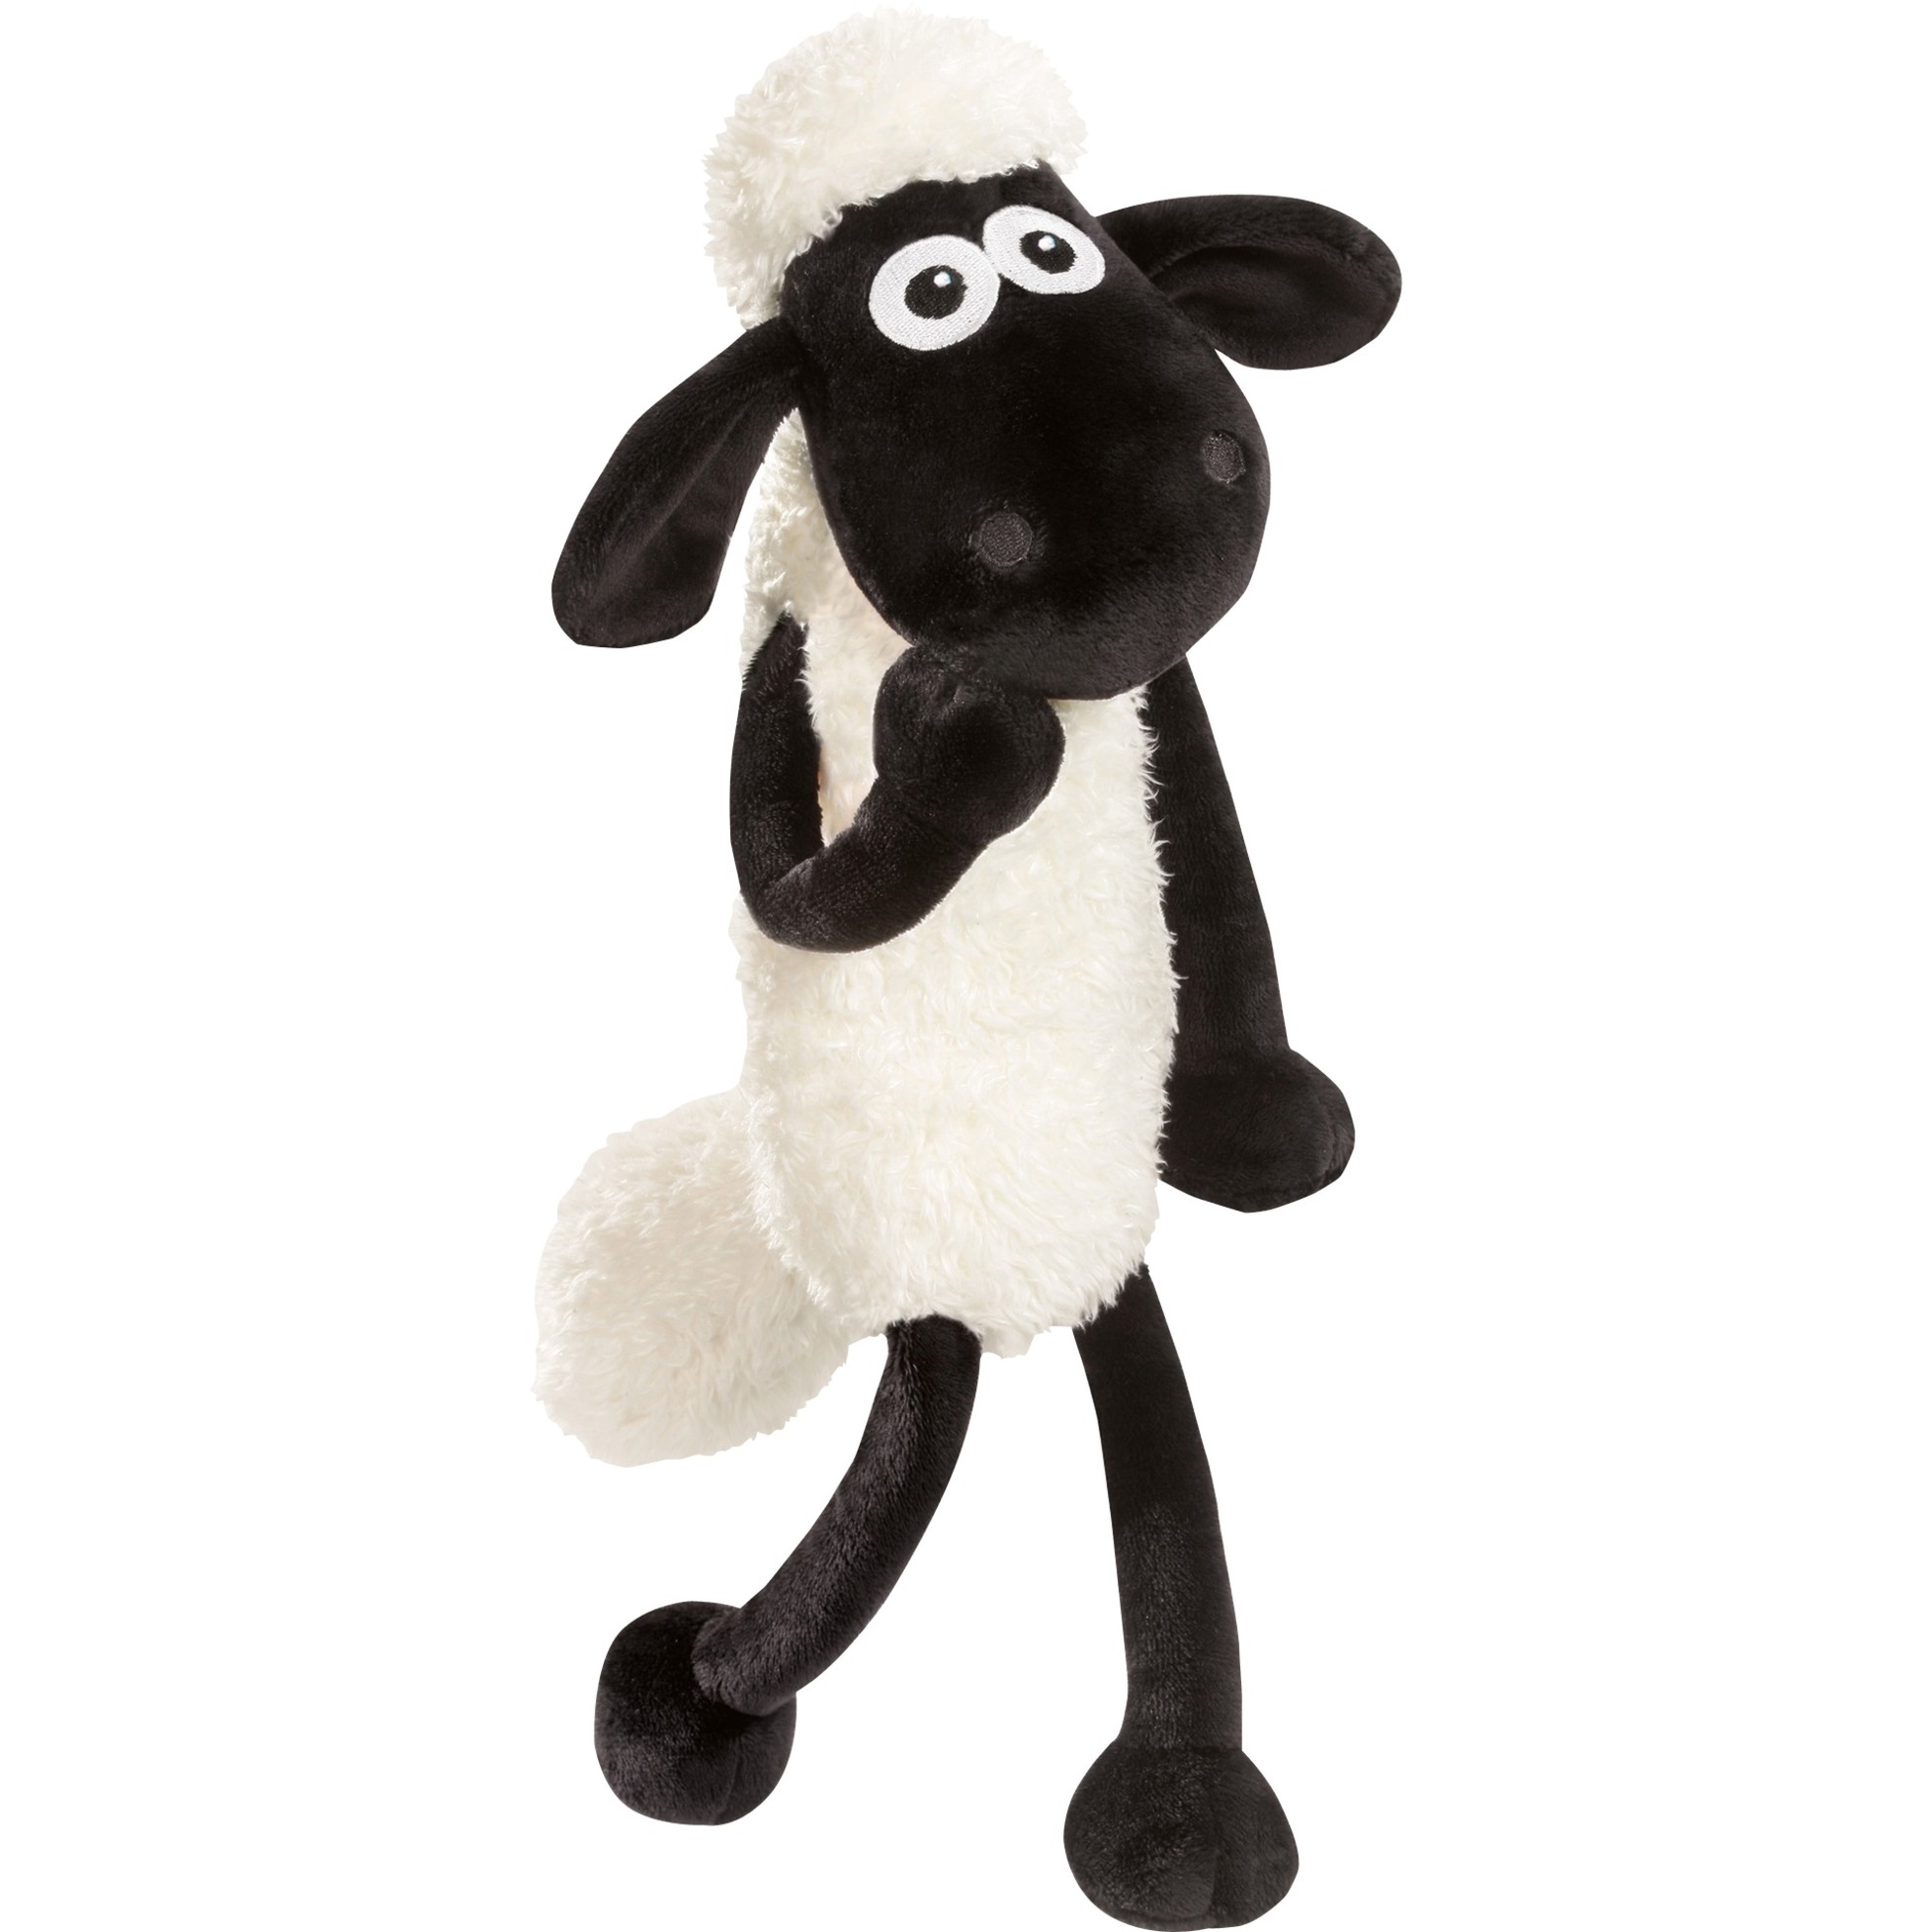 Image of Alternate - Shaun das Schaf, Kuscheltier online einkaufen bei Alternate